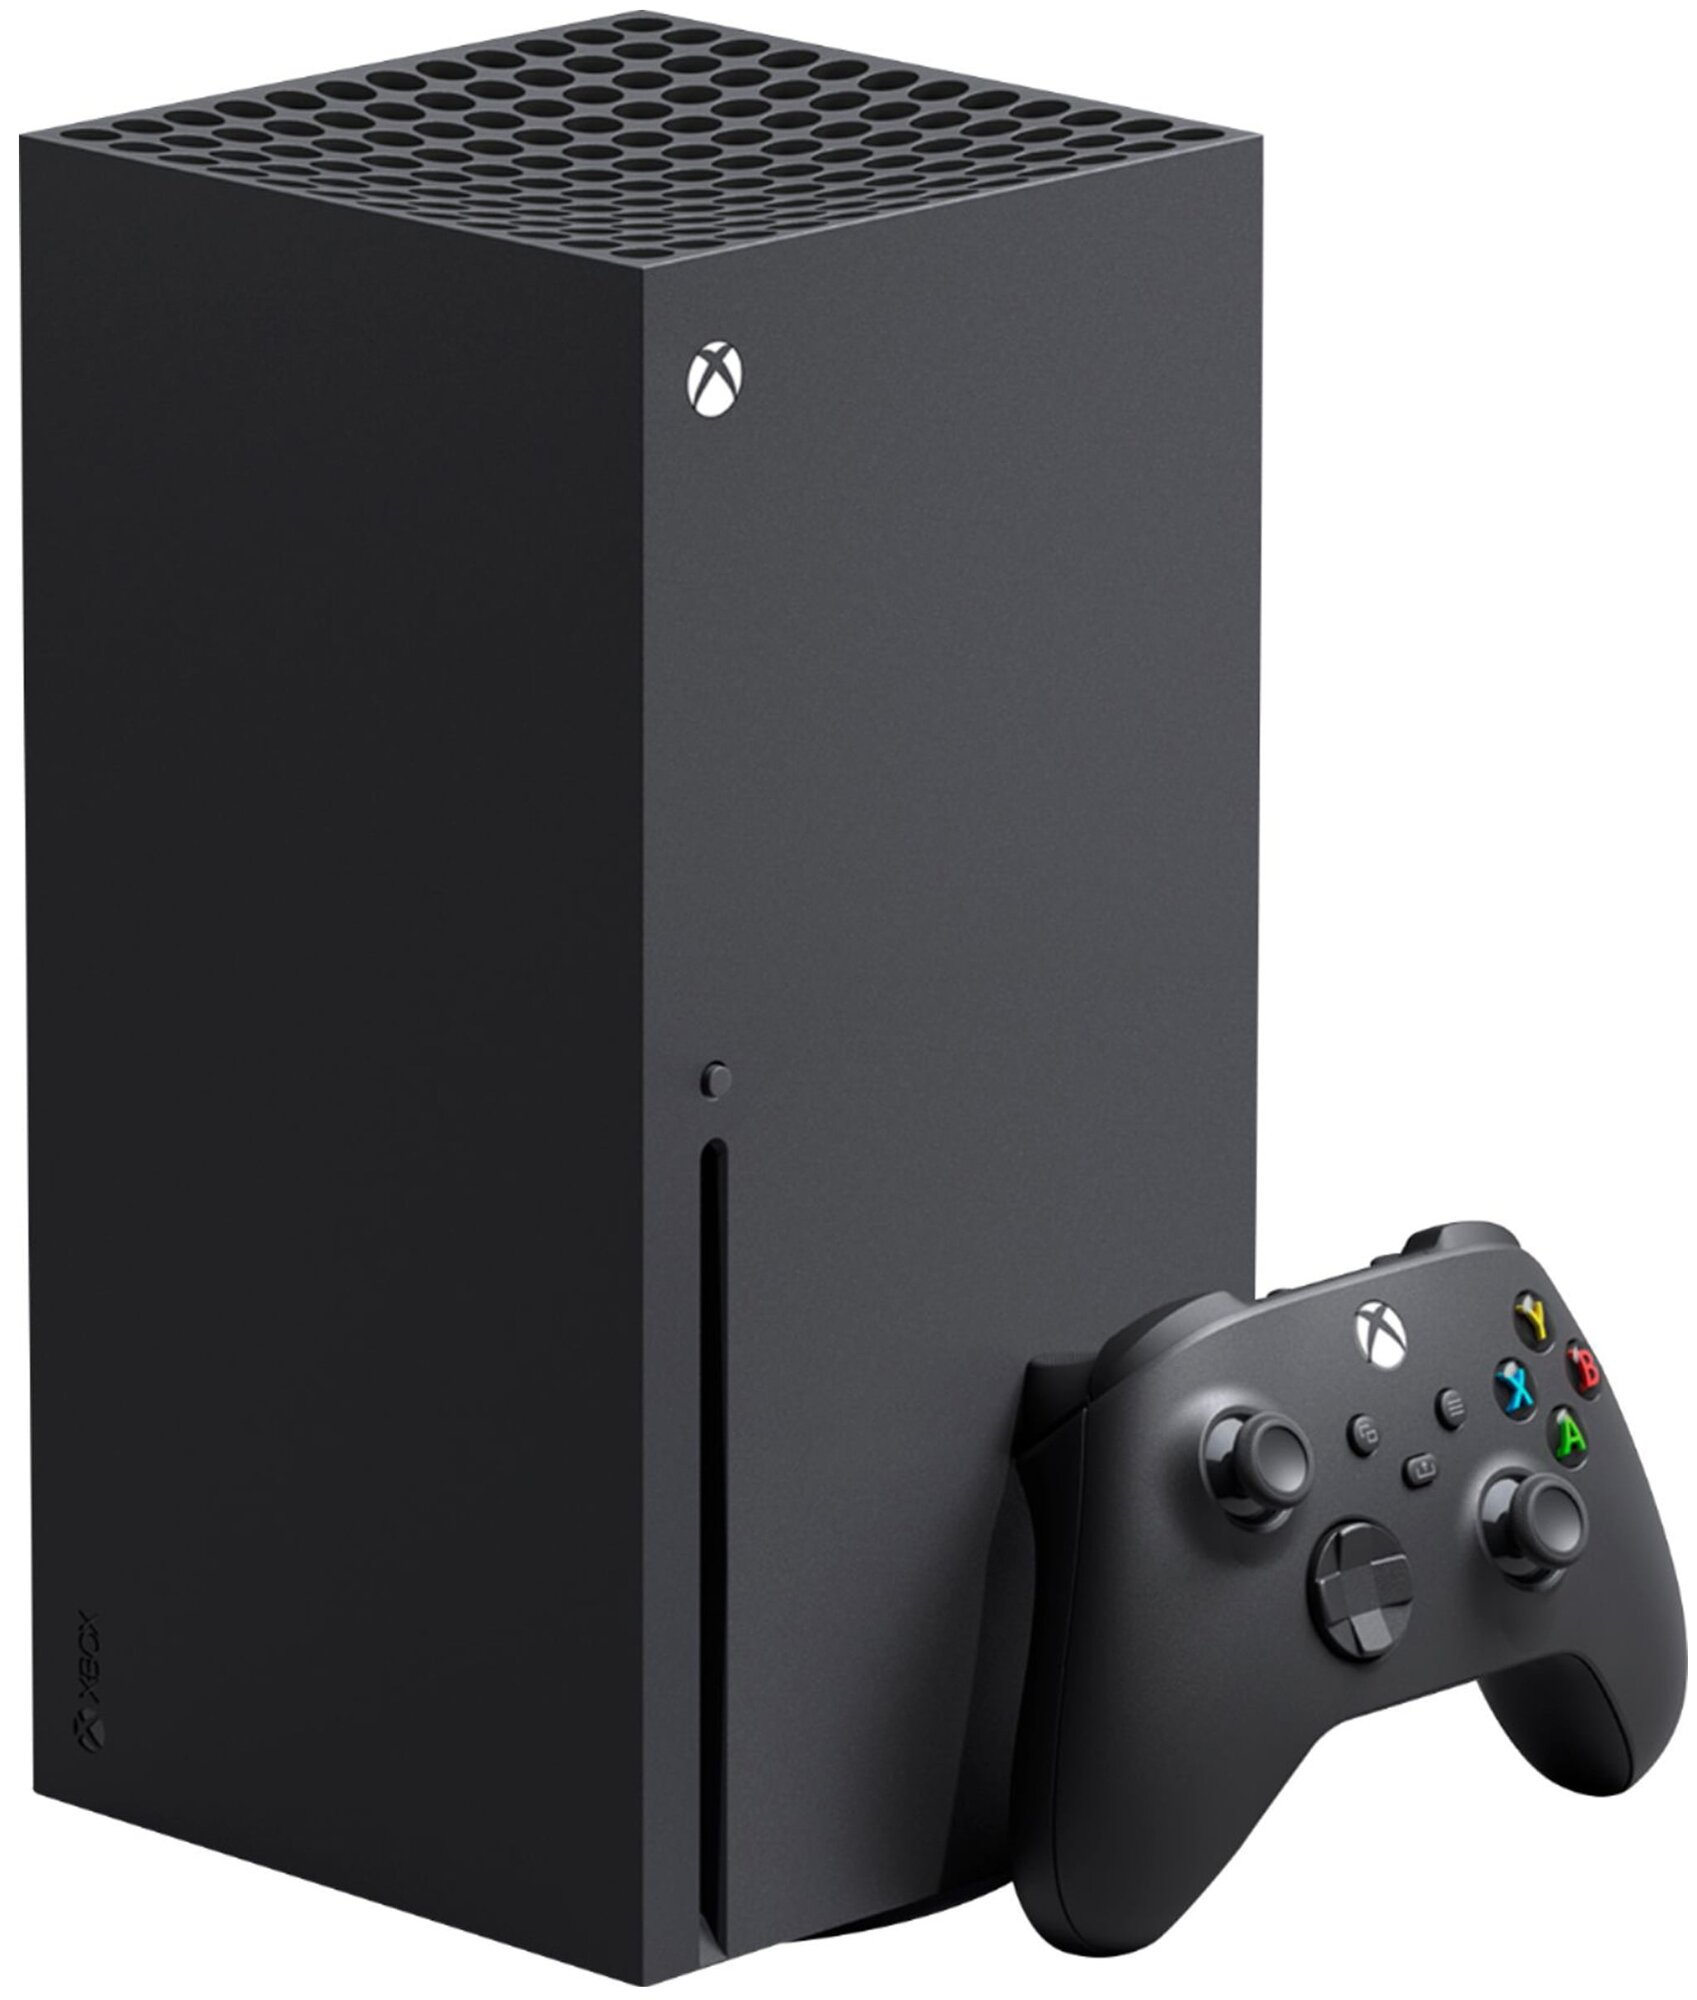 Игровая приставка Microsoft Xbox Series X 1000 ГБ SSD, без игр, Carbon Black